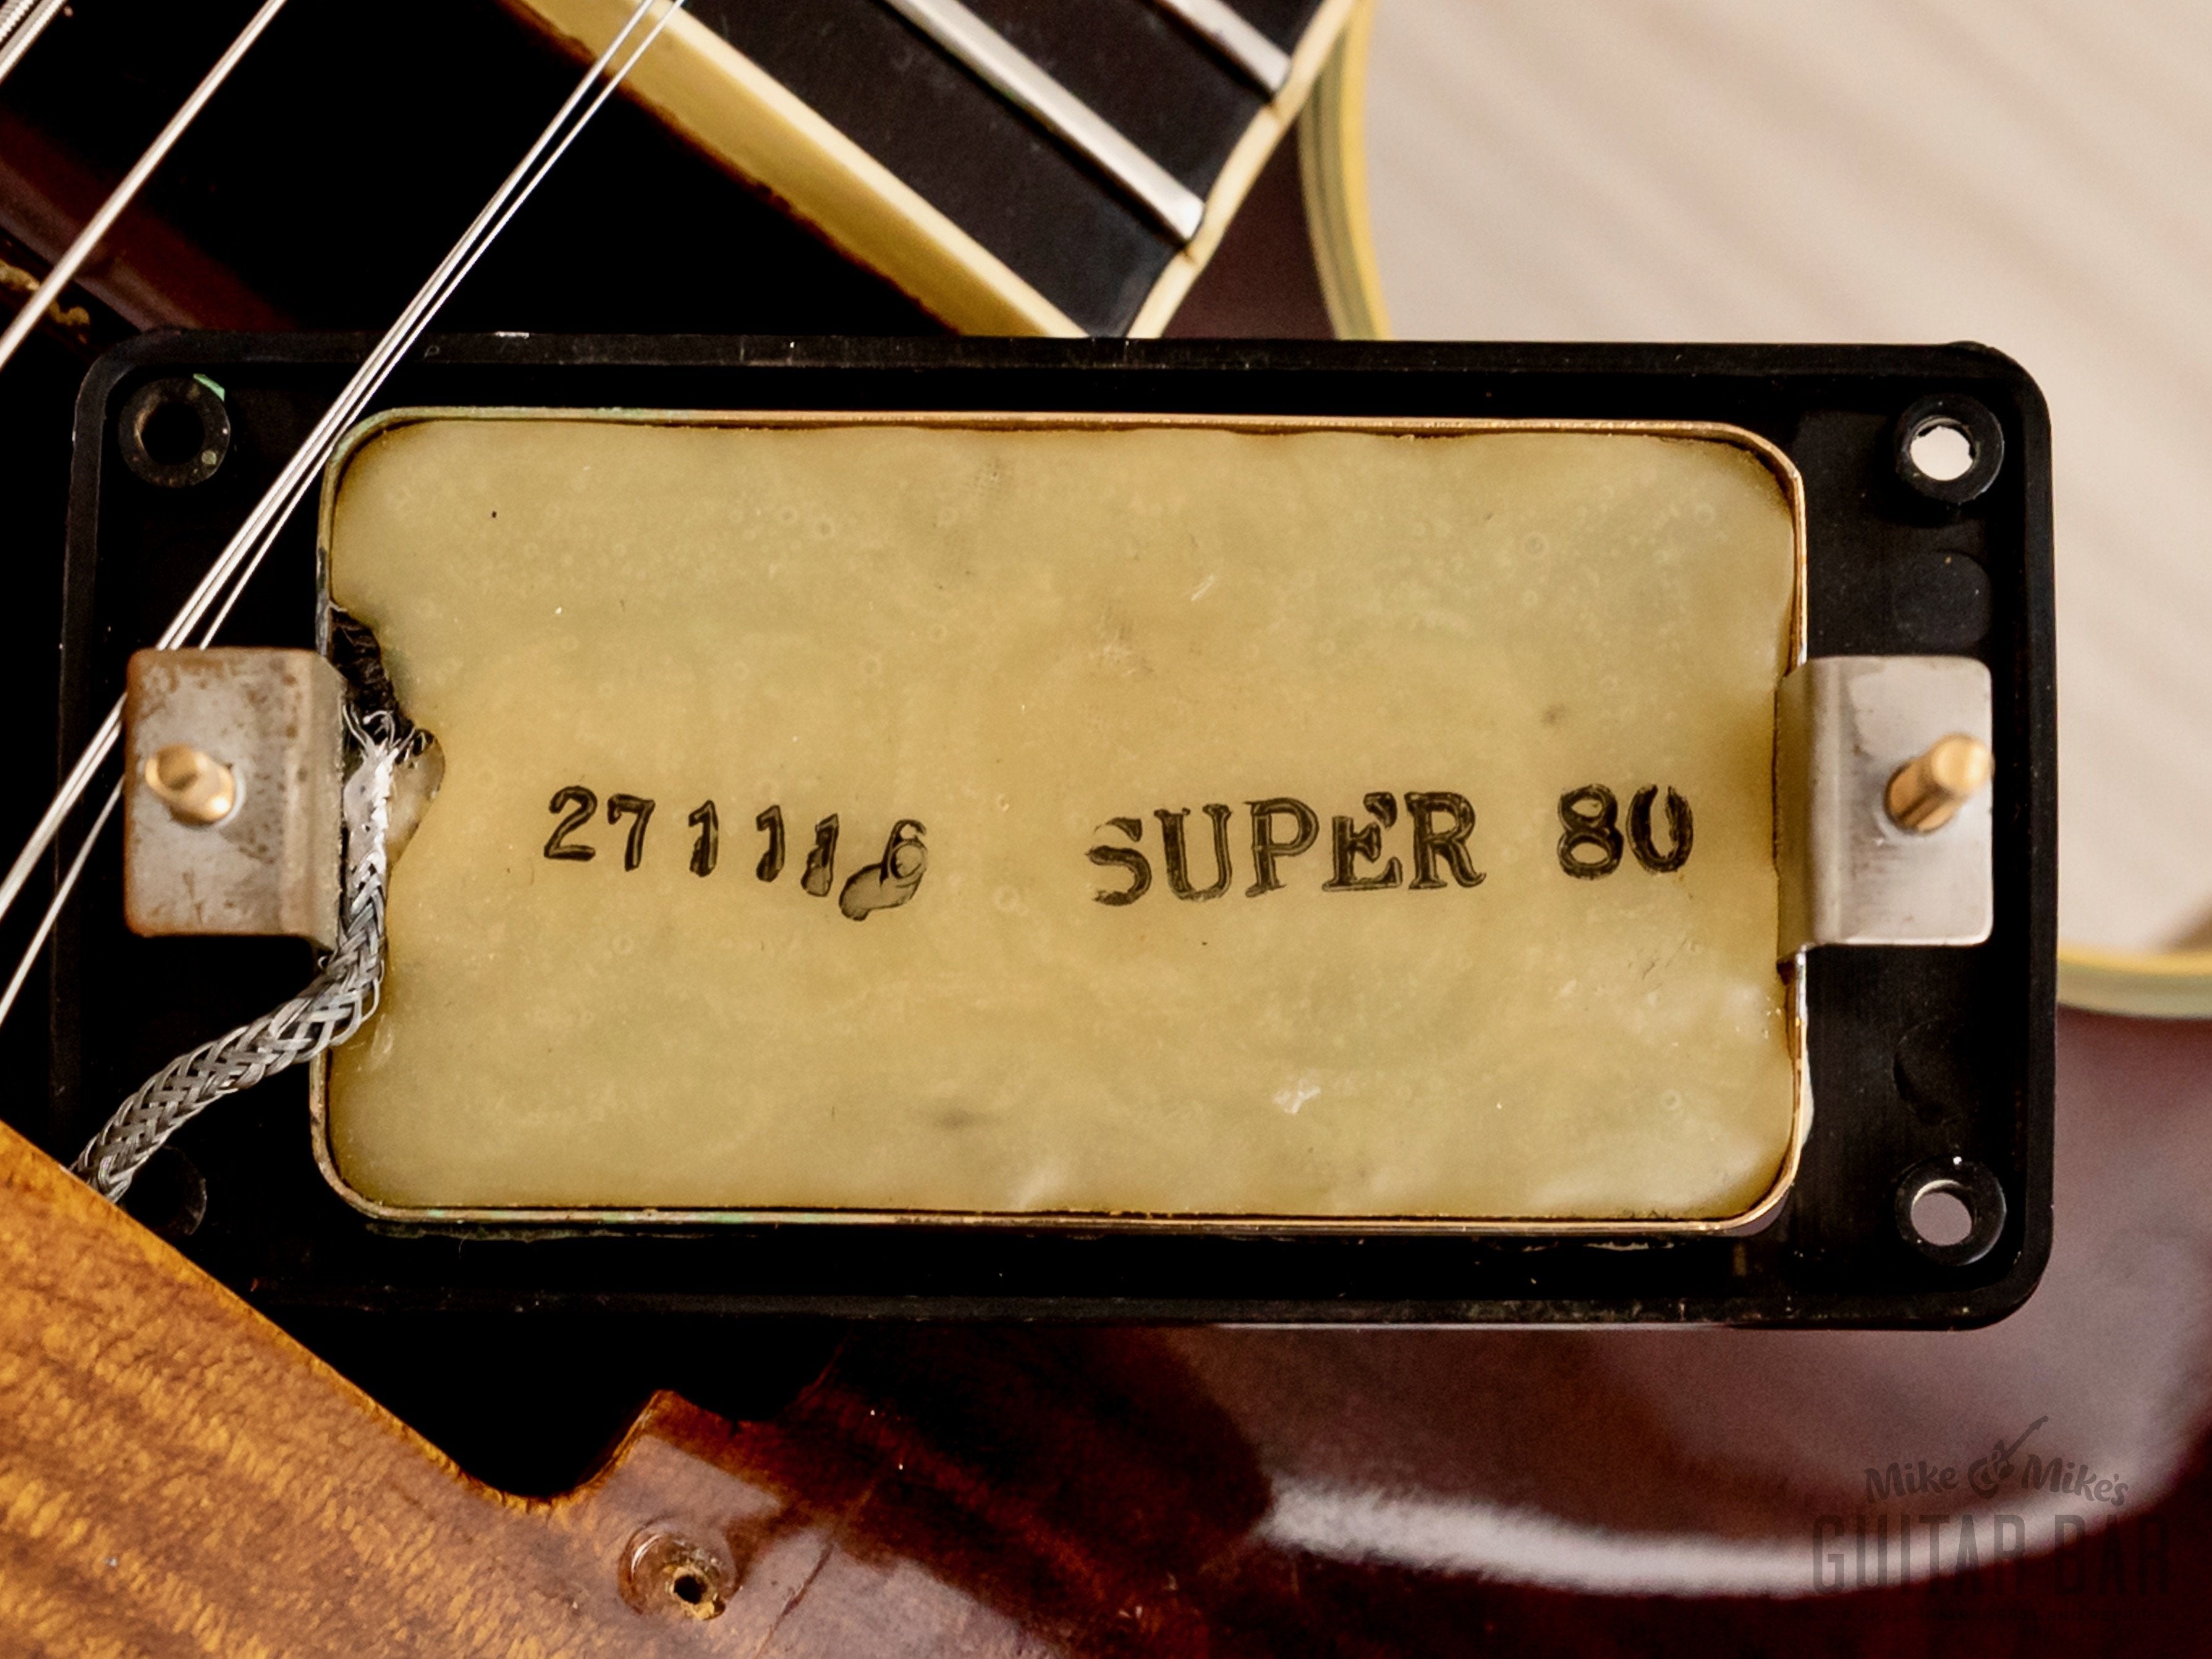 1977 Ibanez Artist 2635 Vintage Archtop Guitar Antique Violin w/ Maxon Super 80 Flying Fingers, Case